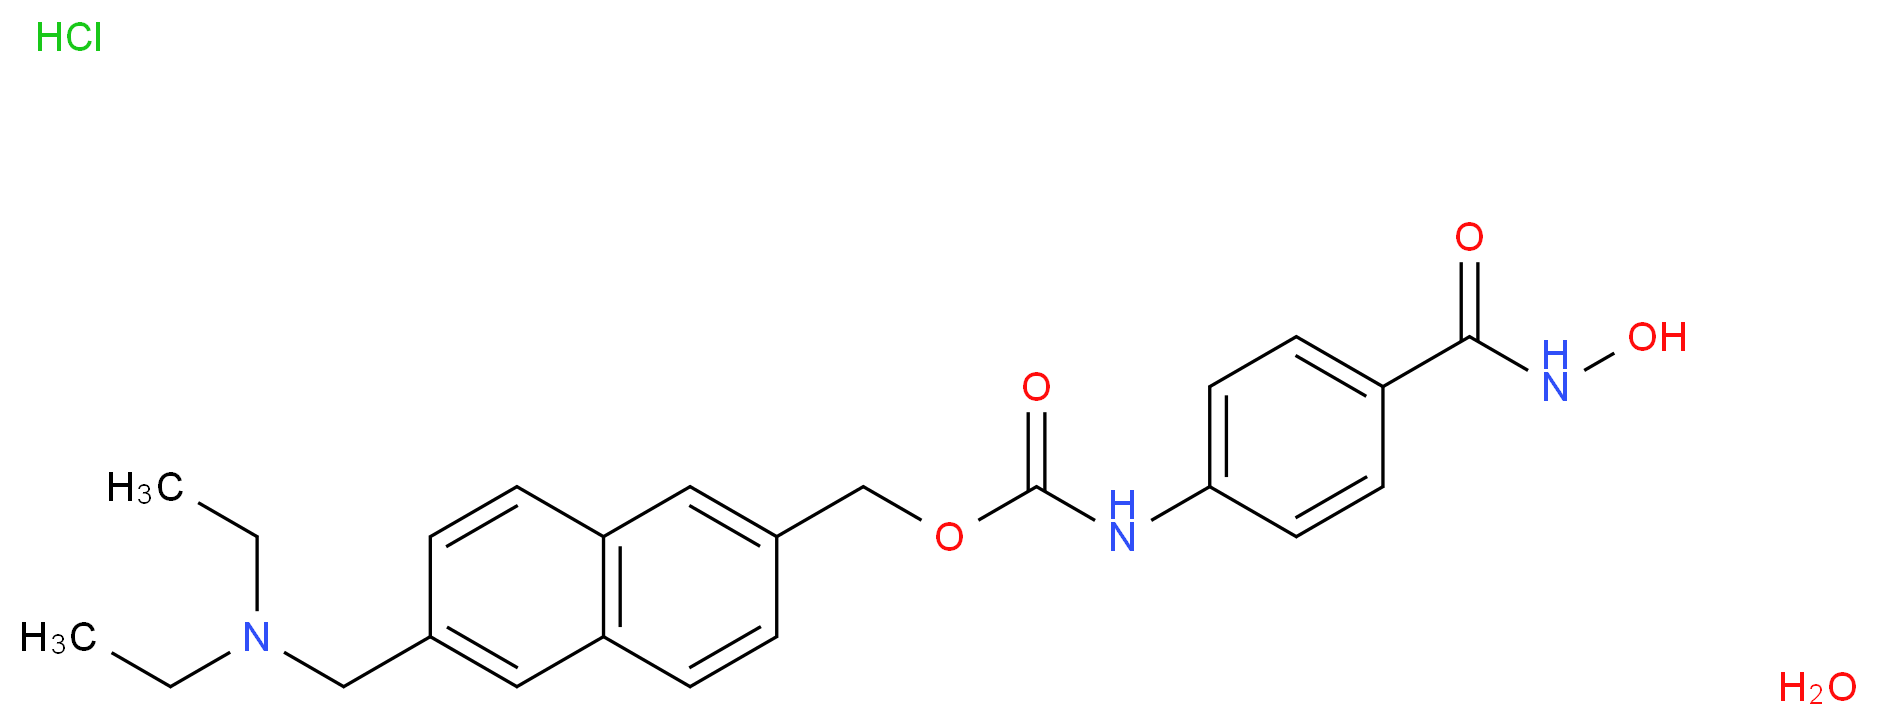 732302-99-7 molecular structure